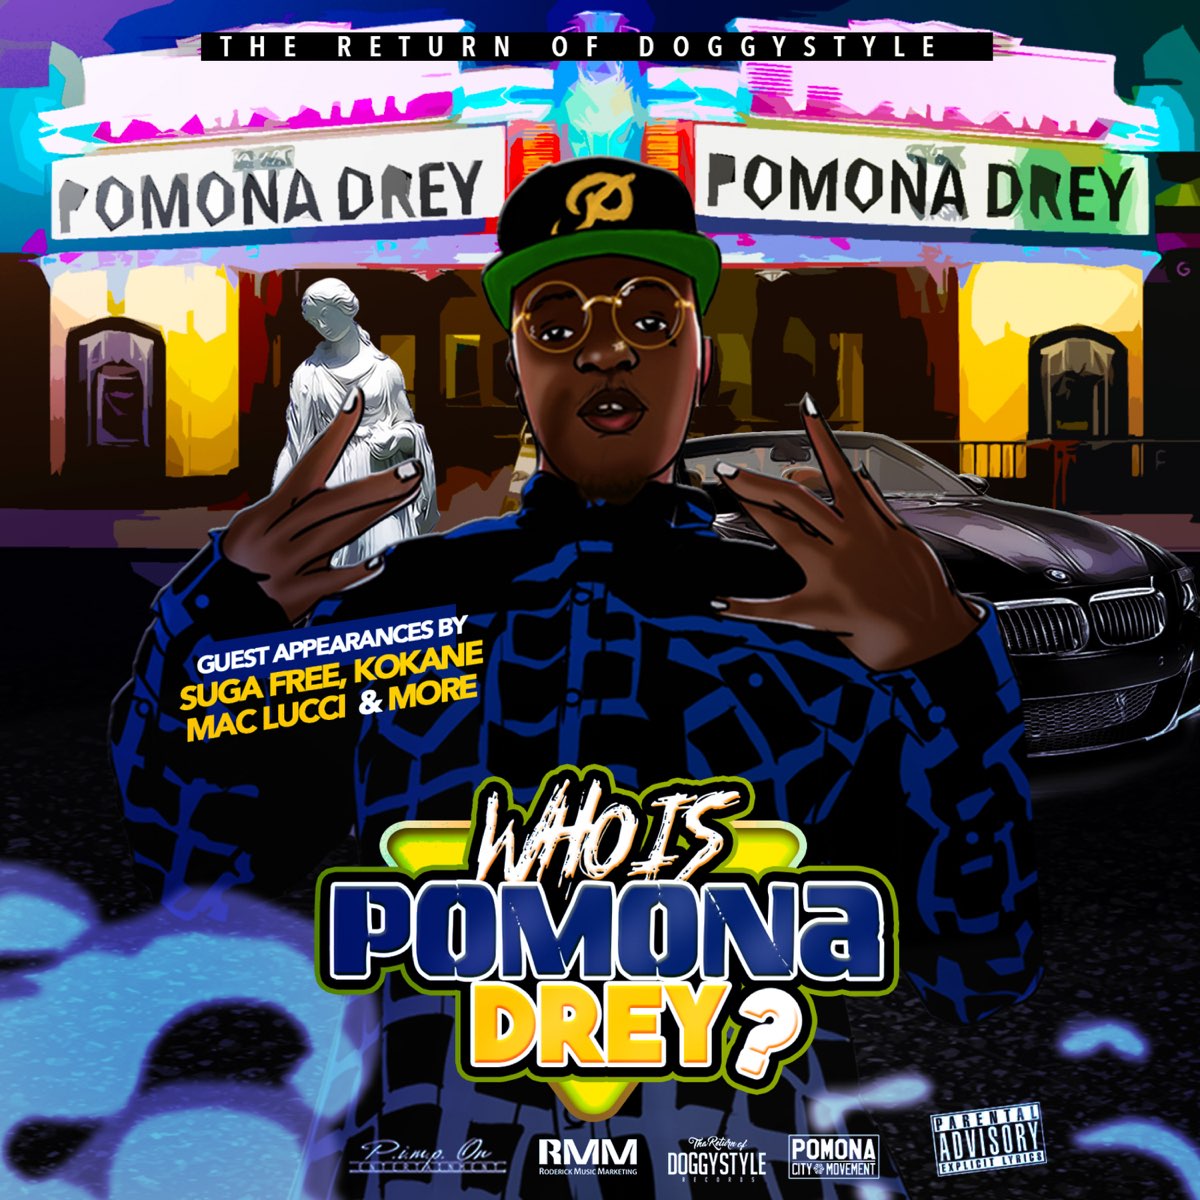 Pomona Drey - Who Is Pomona Drey?